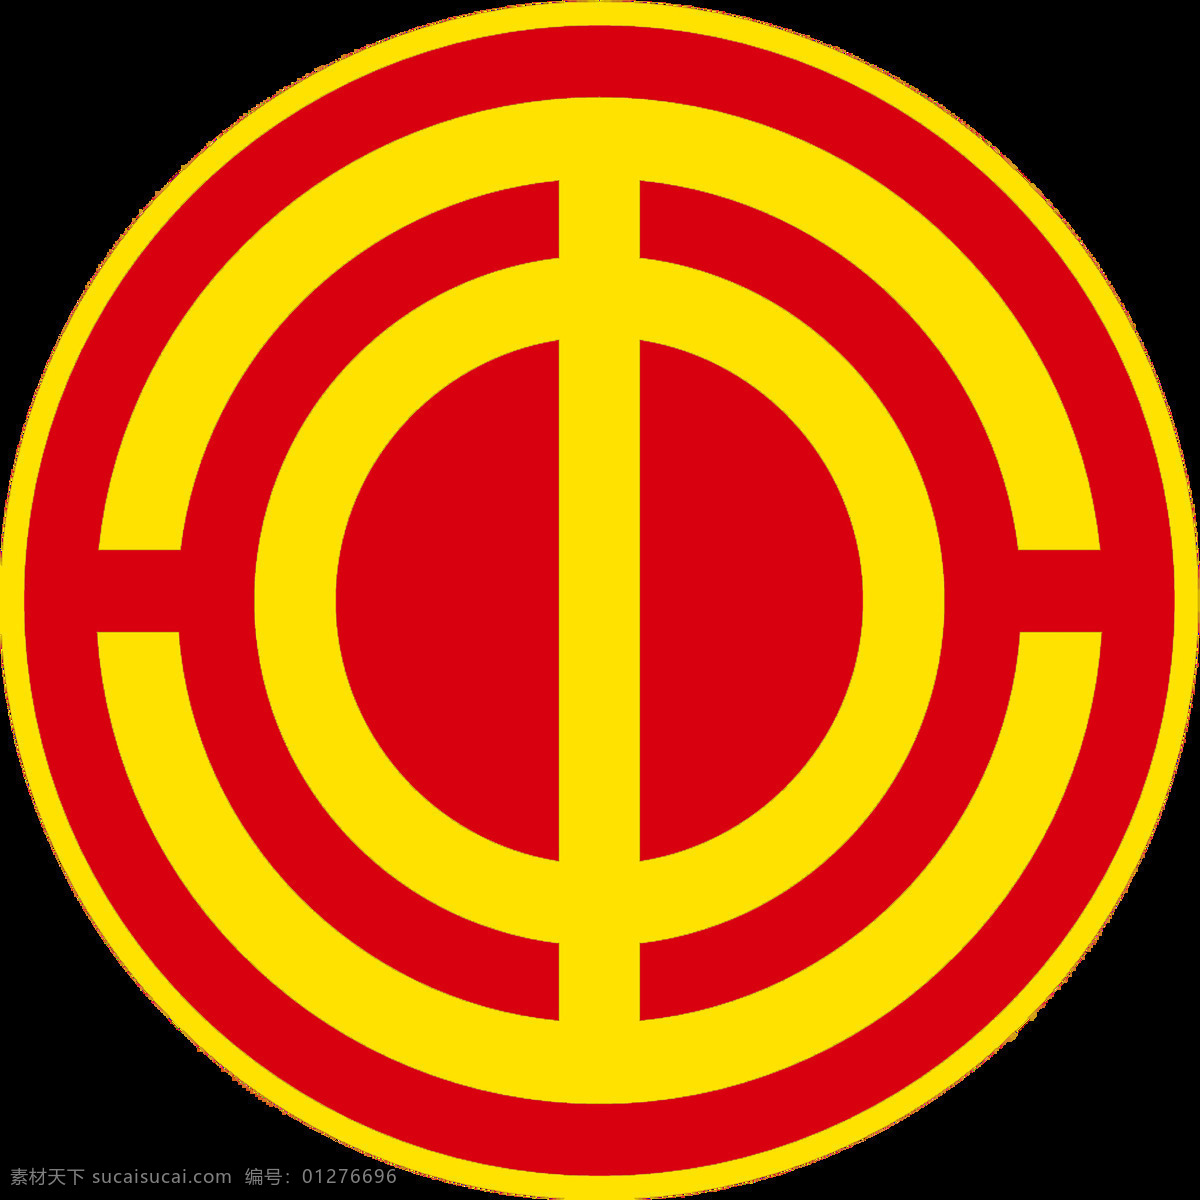 标准工会会徽 工会 会徽 标准 标识 标志 徽标 标志图标 公共标识标志